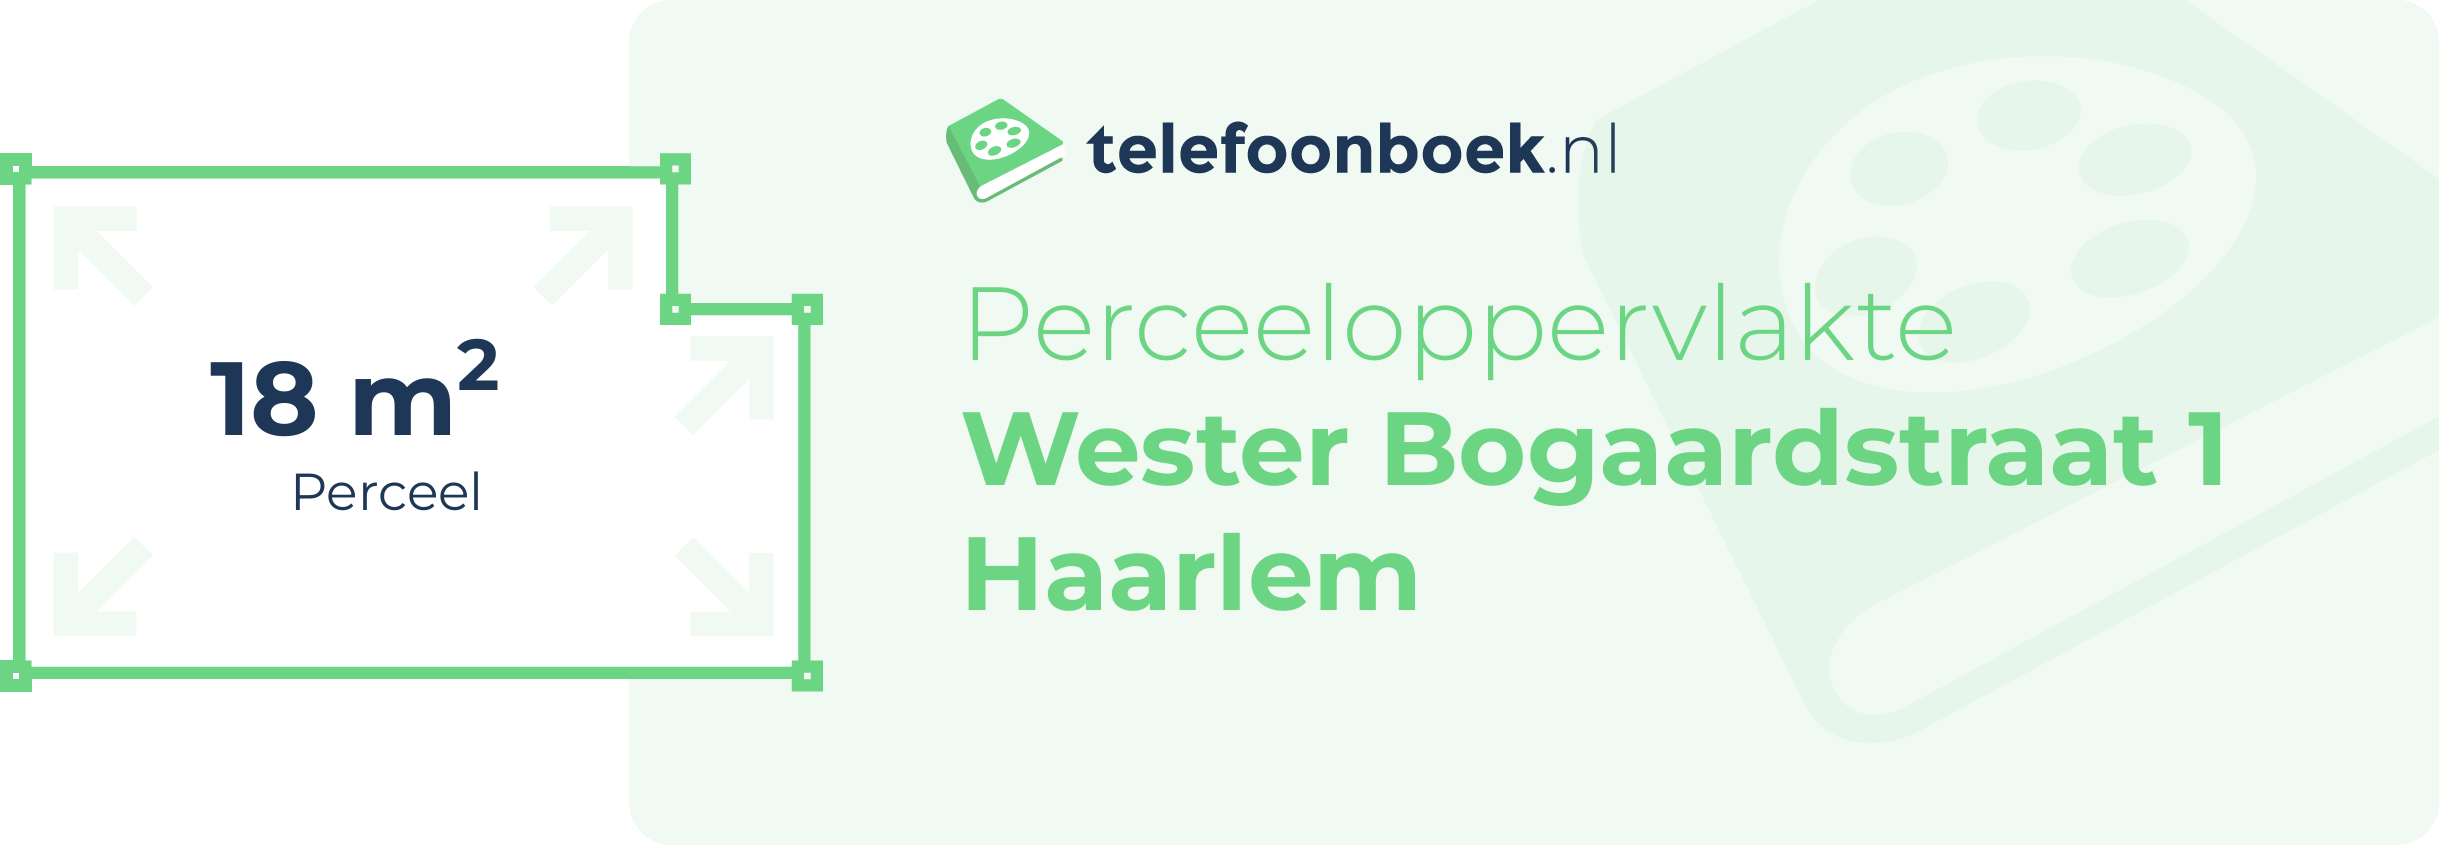 Perceeloppervlakte Wester Bogaardstraat 1 Haarlem